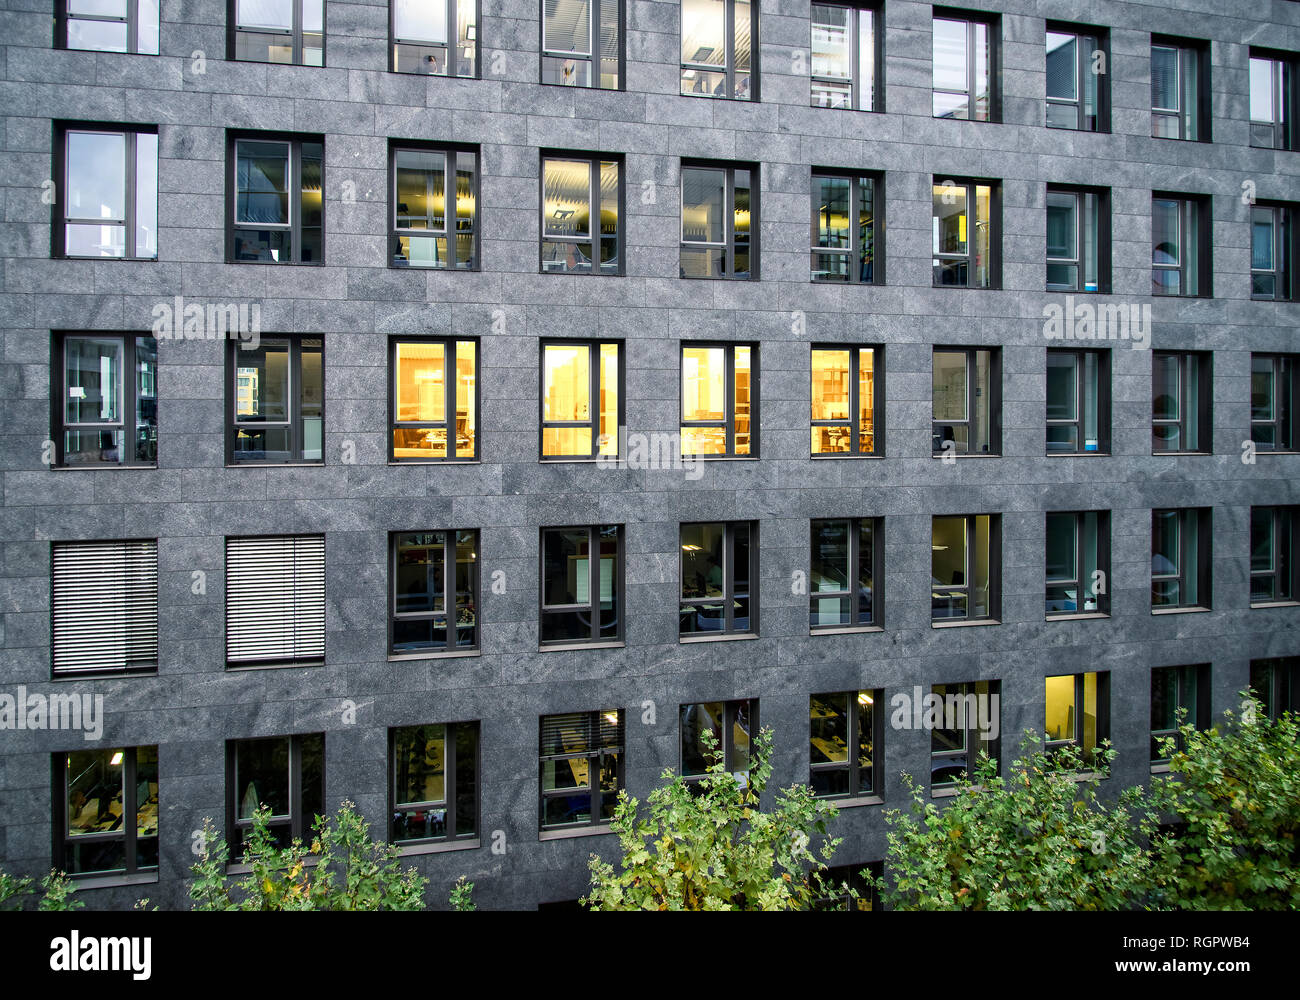 Façade d'un immeuble de bureaux avec quelques fenêtres éclairées Banque D'Images